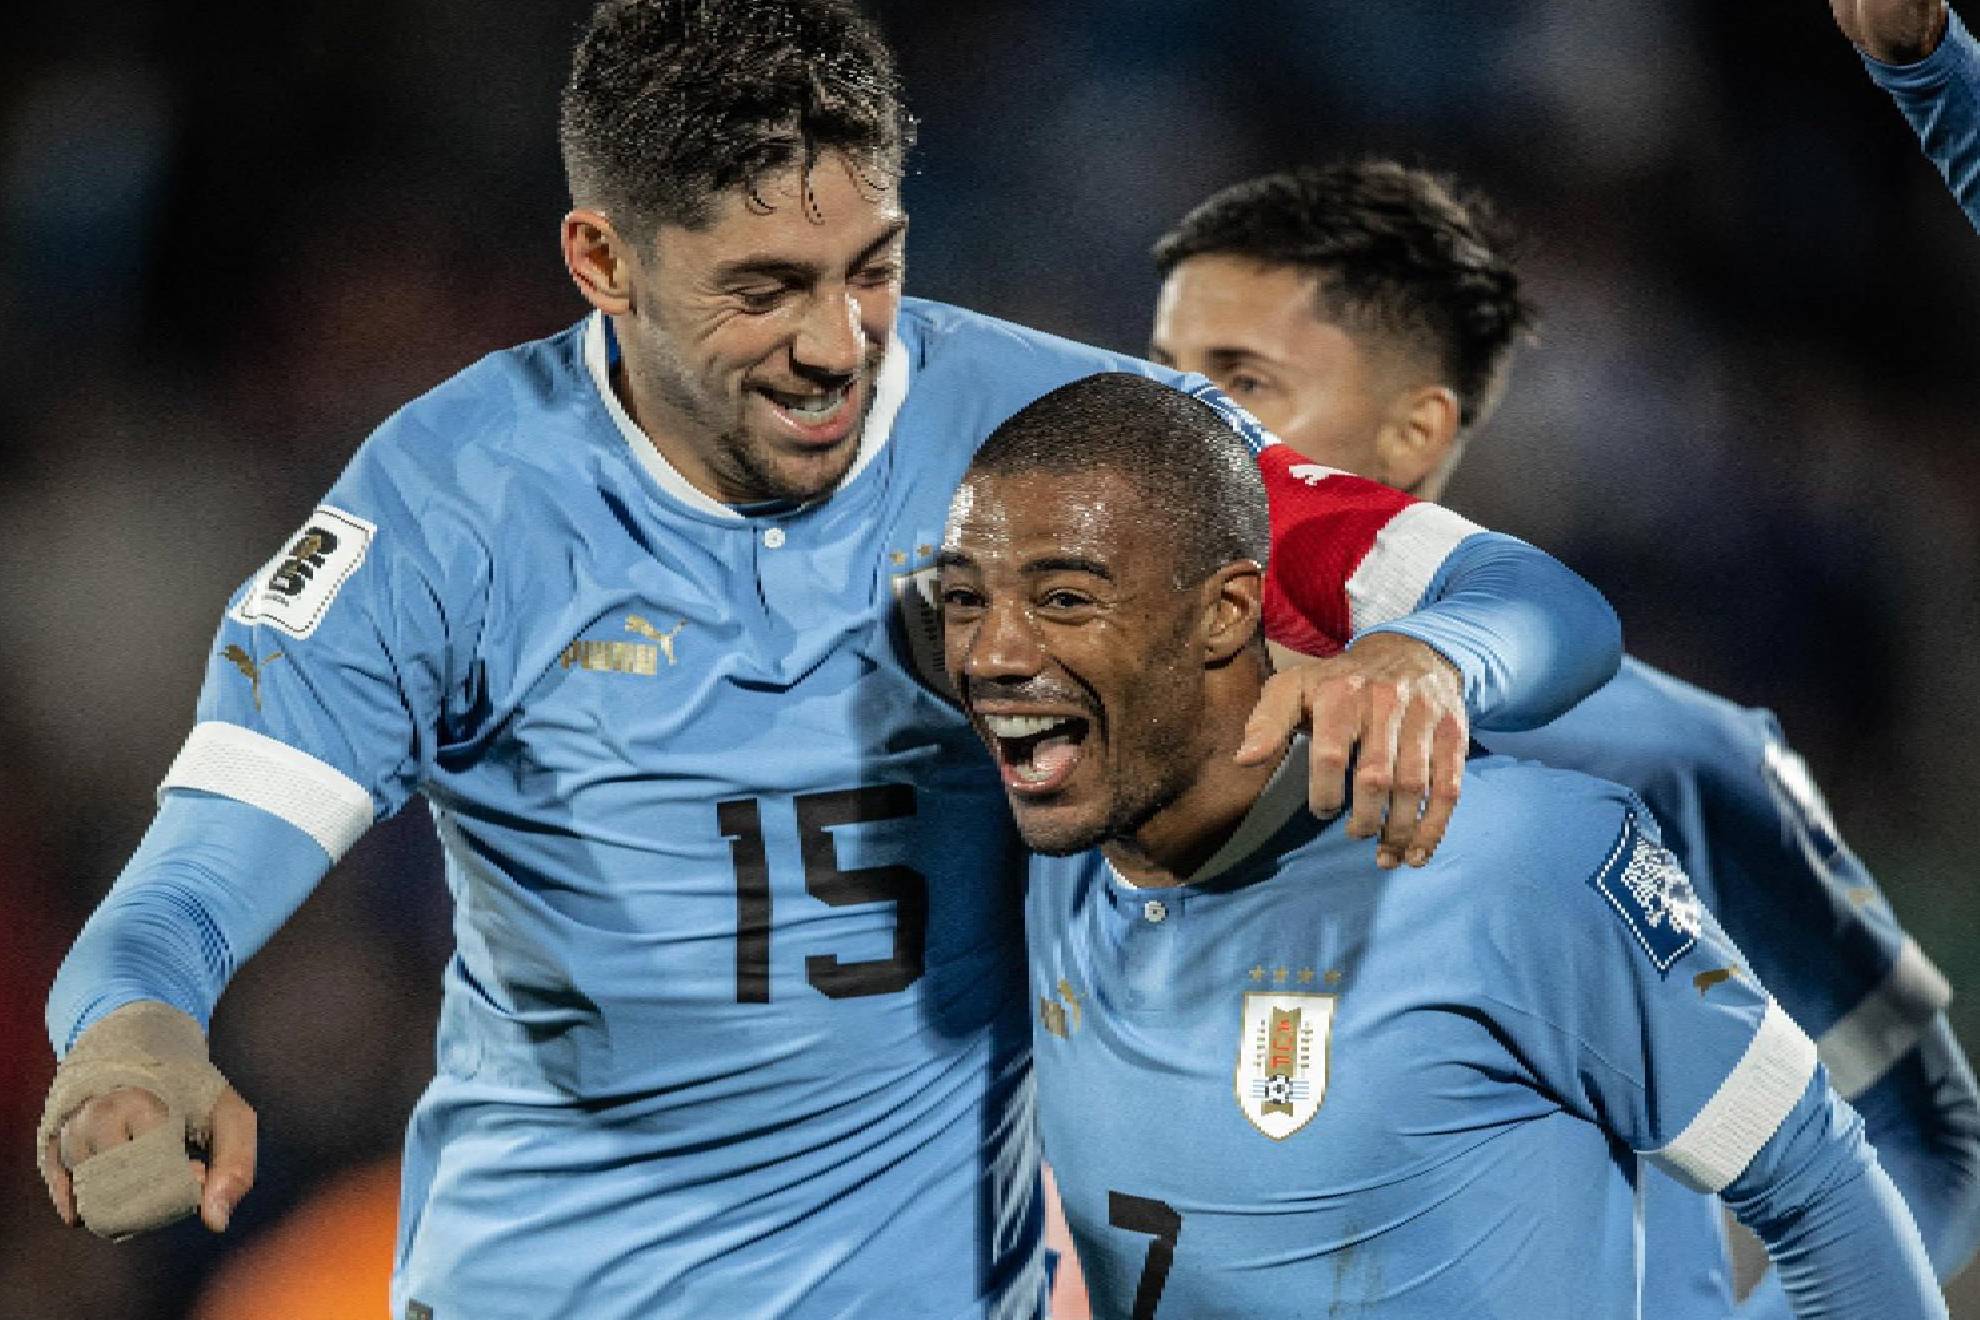 Siete jugadores debutaron con Uruguay en Copas del Mundo - AUF